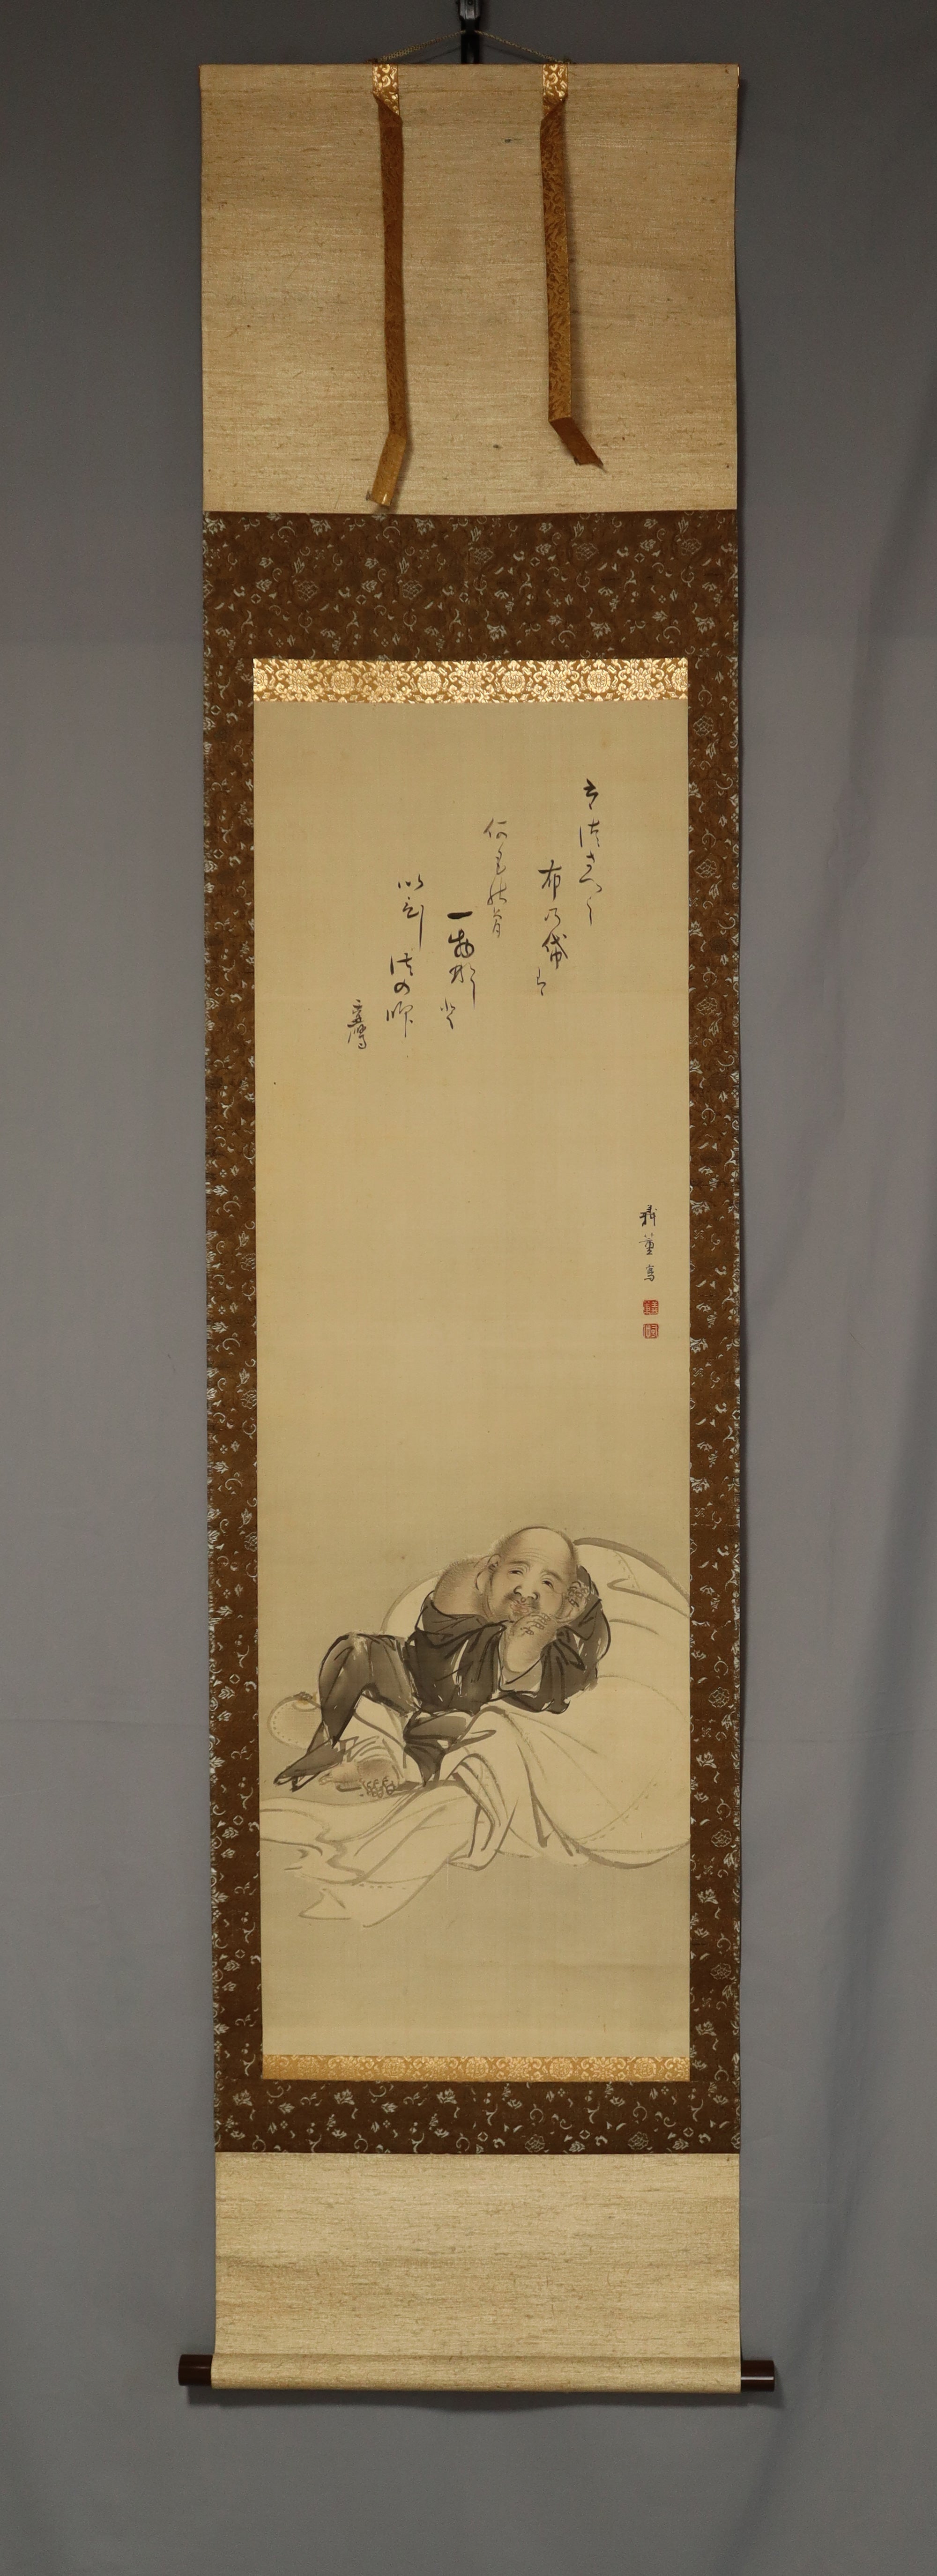 Shibata Gito（1780-1819），Kamono Suetaka（1754-1841）“日本诗歌和Hotei”合作，19世纪初